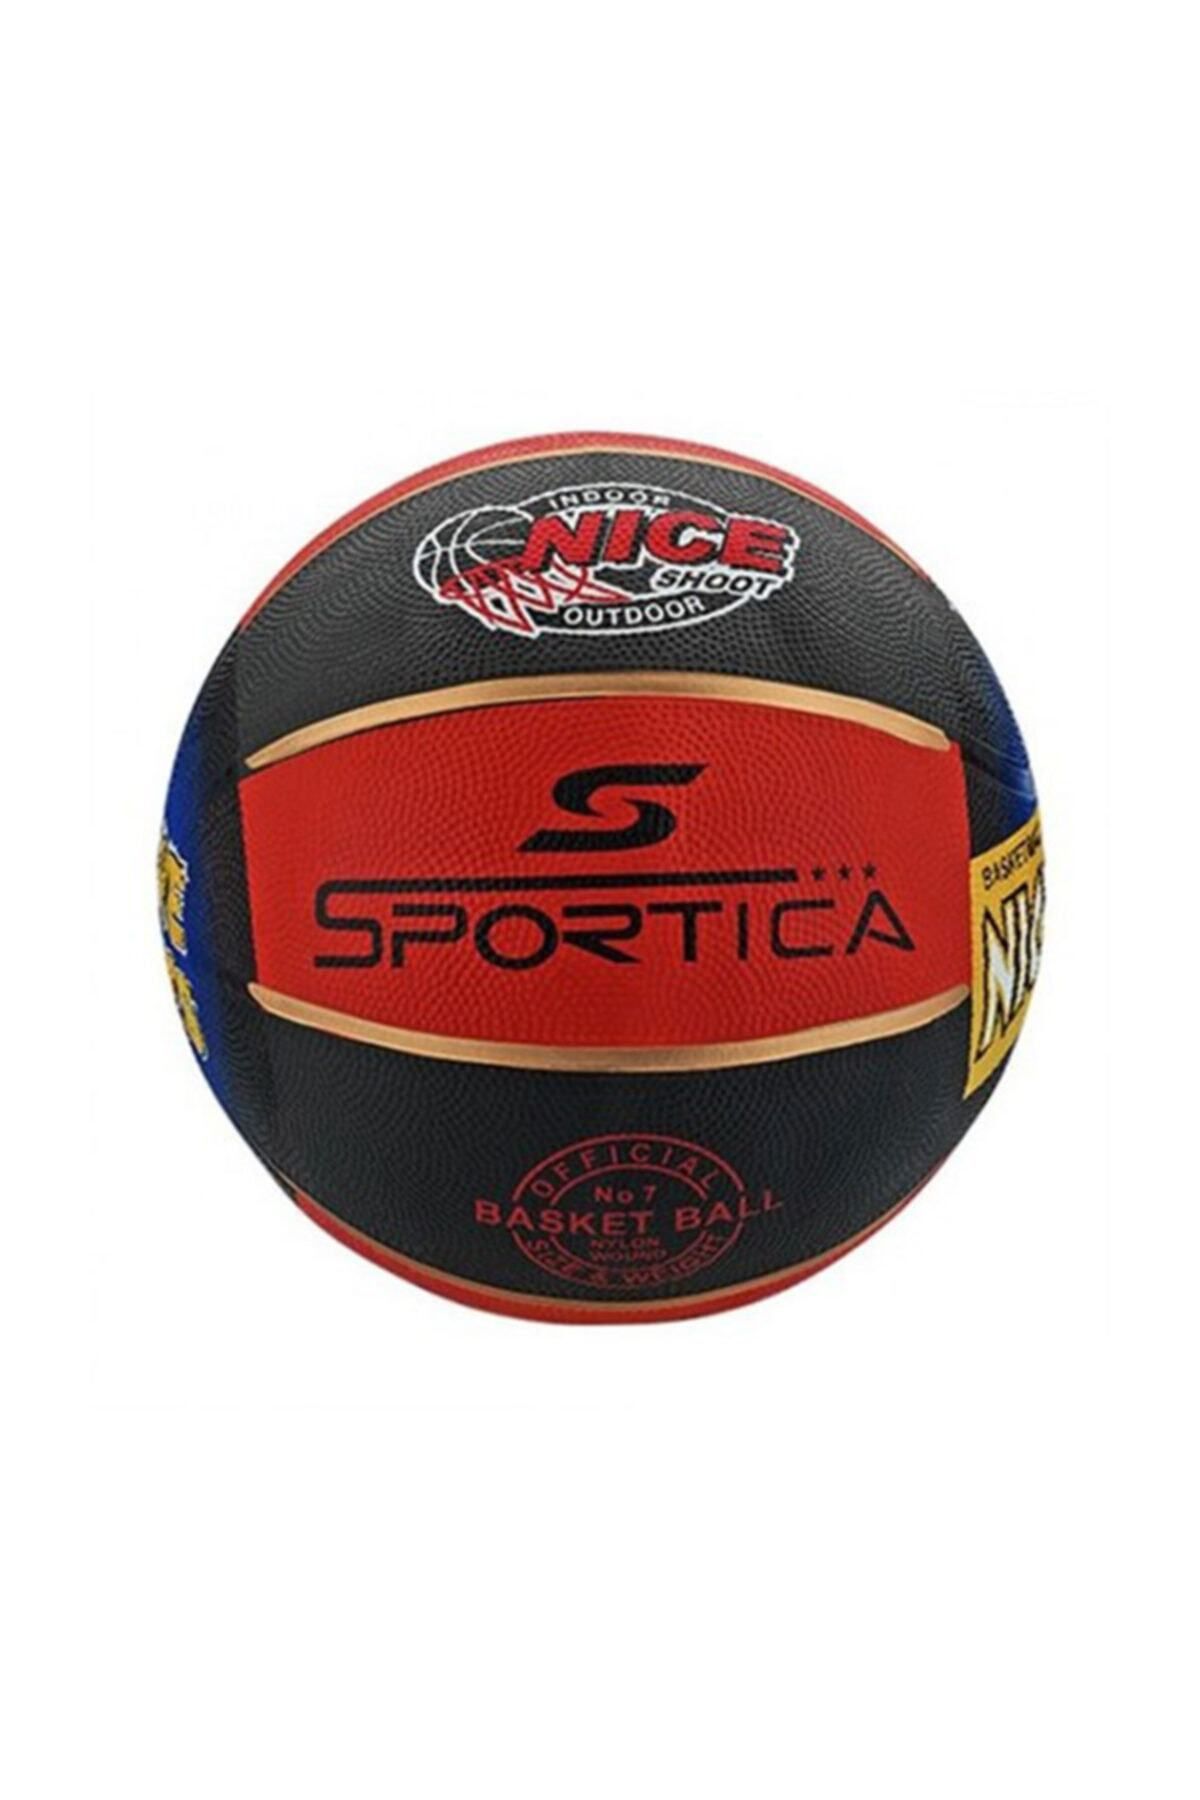 ALTIS Sportica Bb200r Basketbol Topu No:7